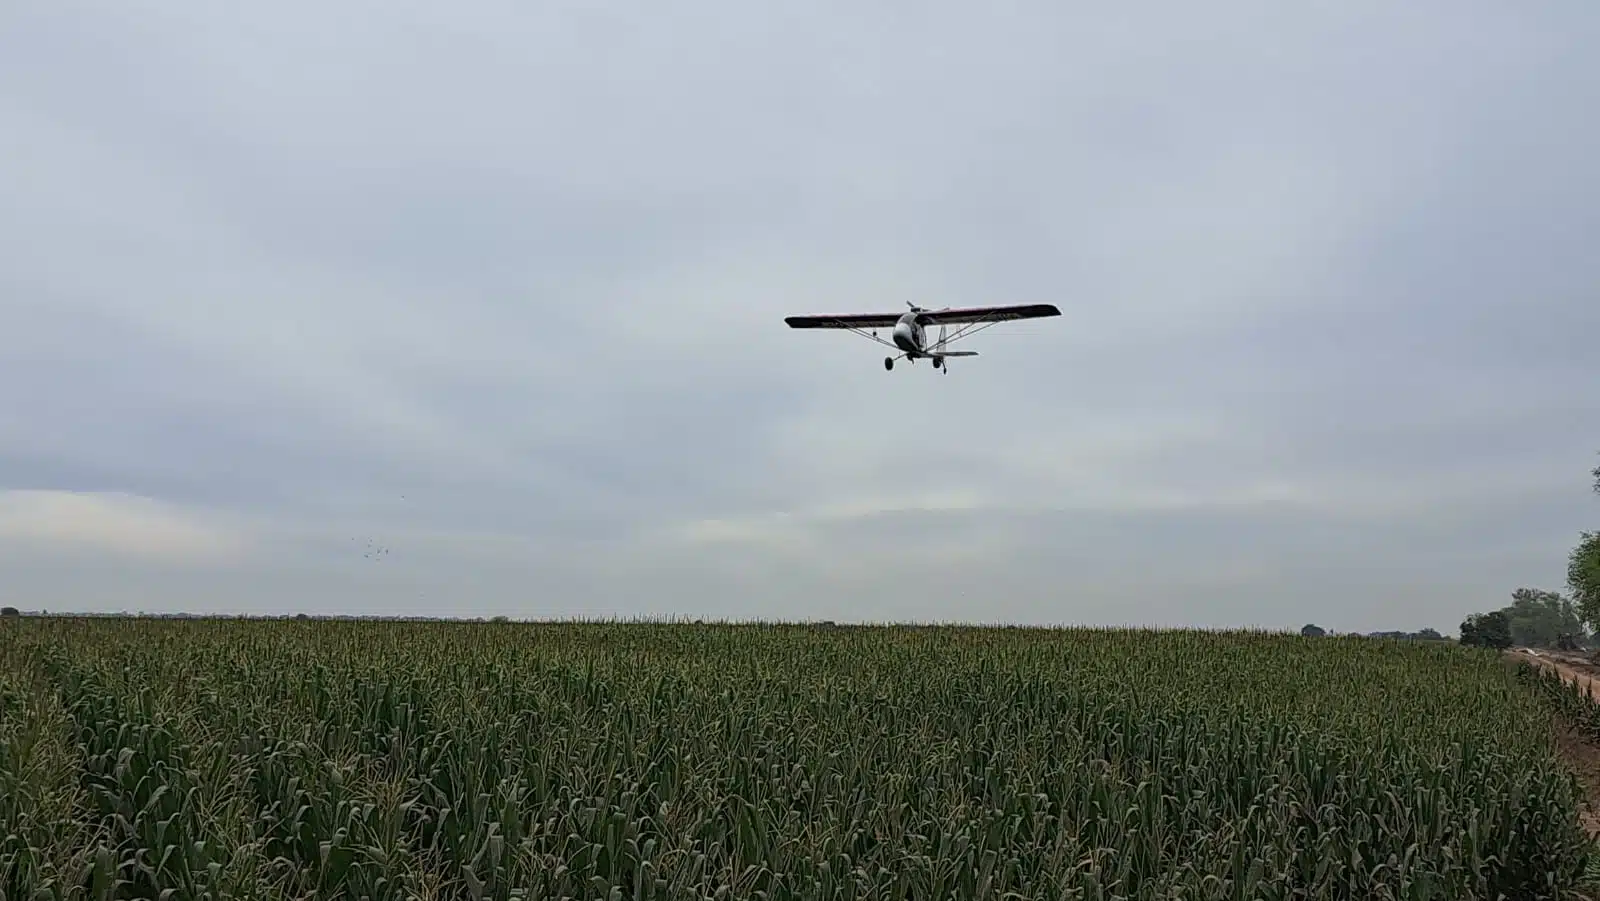 Avioneta sobrevolando sobre el campo agrícola